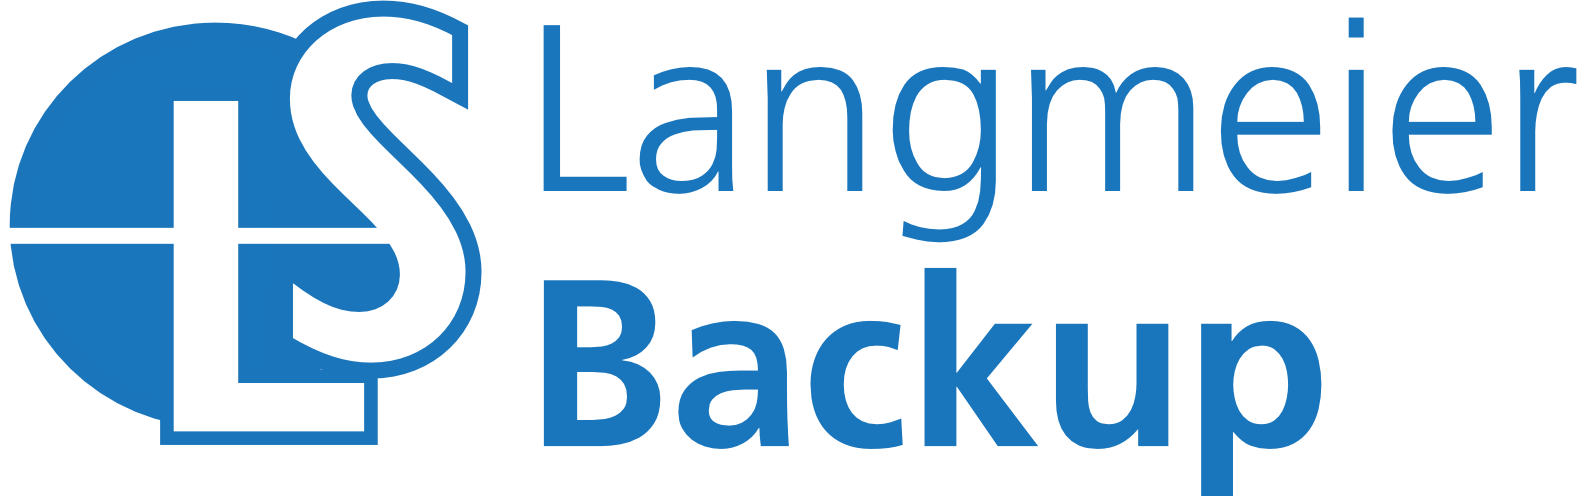 LS Langmeier – Backuplösungen ist Partner von Richter Learning Systems